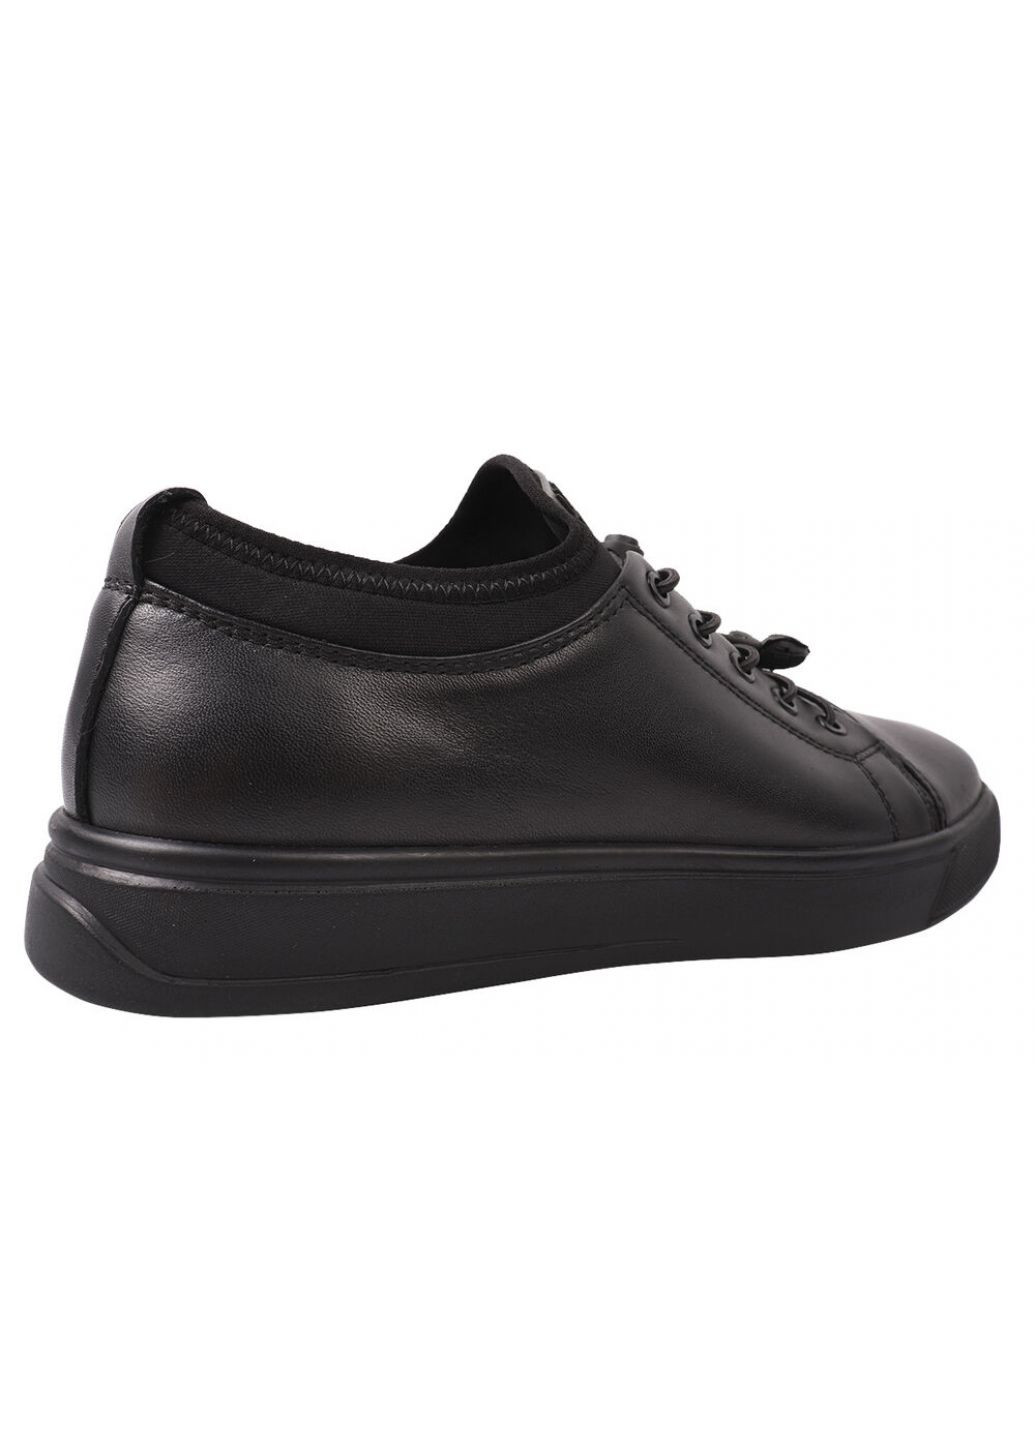 Черные туфли комфорт мужские из натуральной кожи, на шнуровке, на платформе, черные, Marion